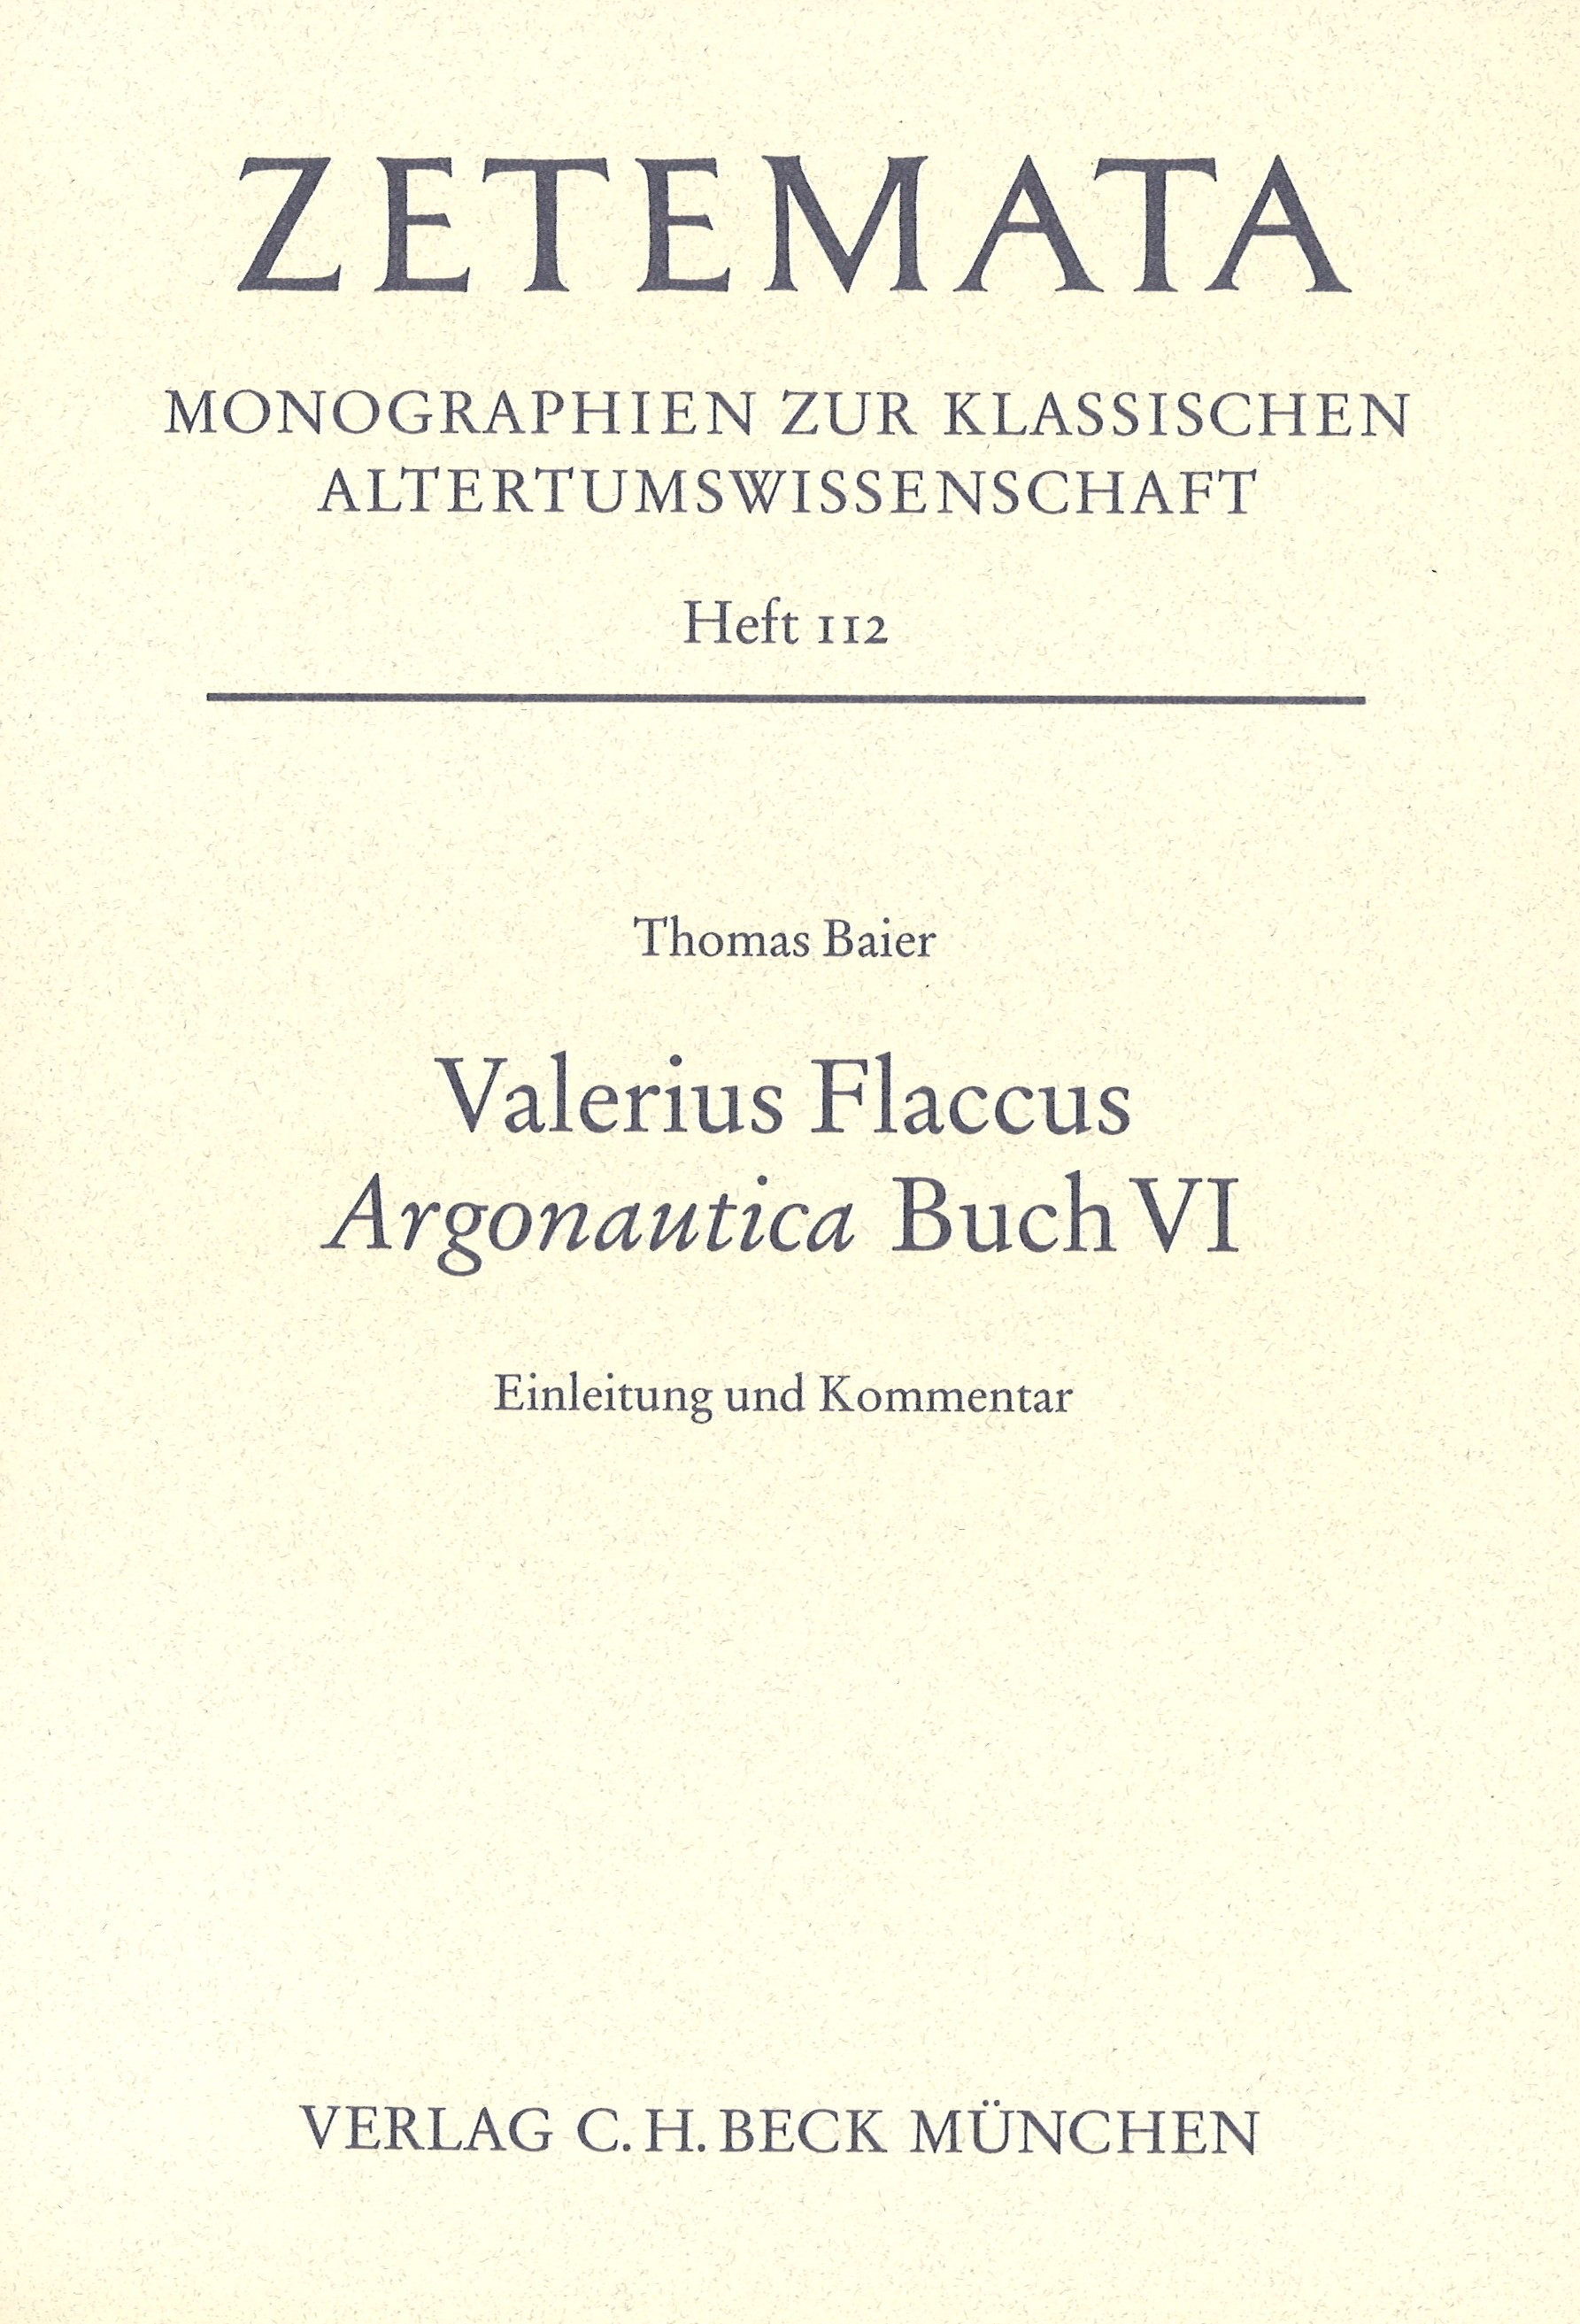 Cover: Baier, Thomas, Valerius Flaccus Argonautica Buch VI